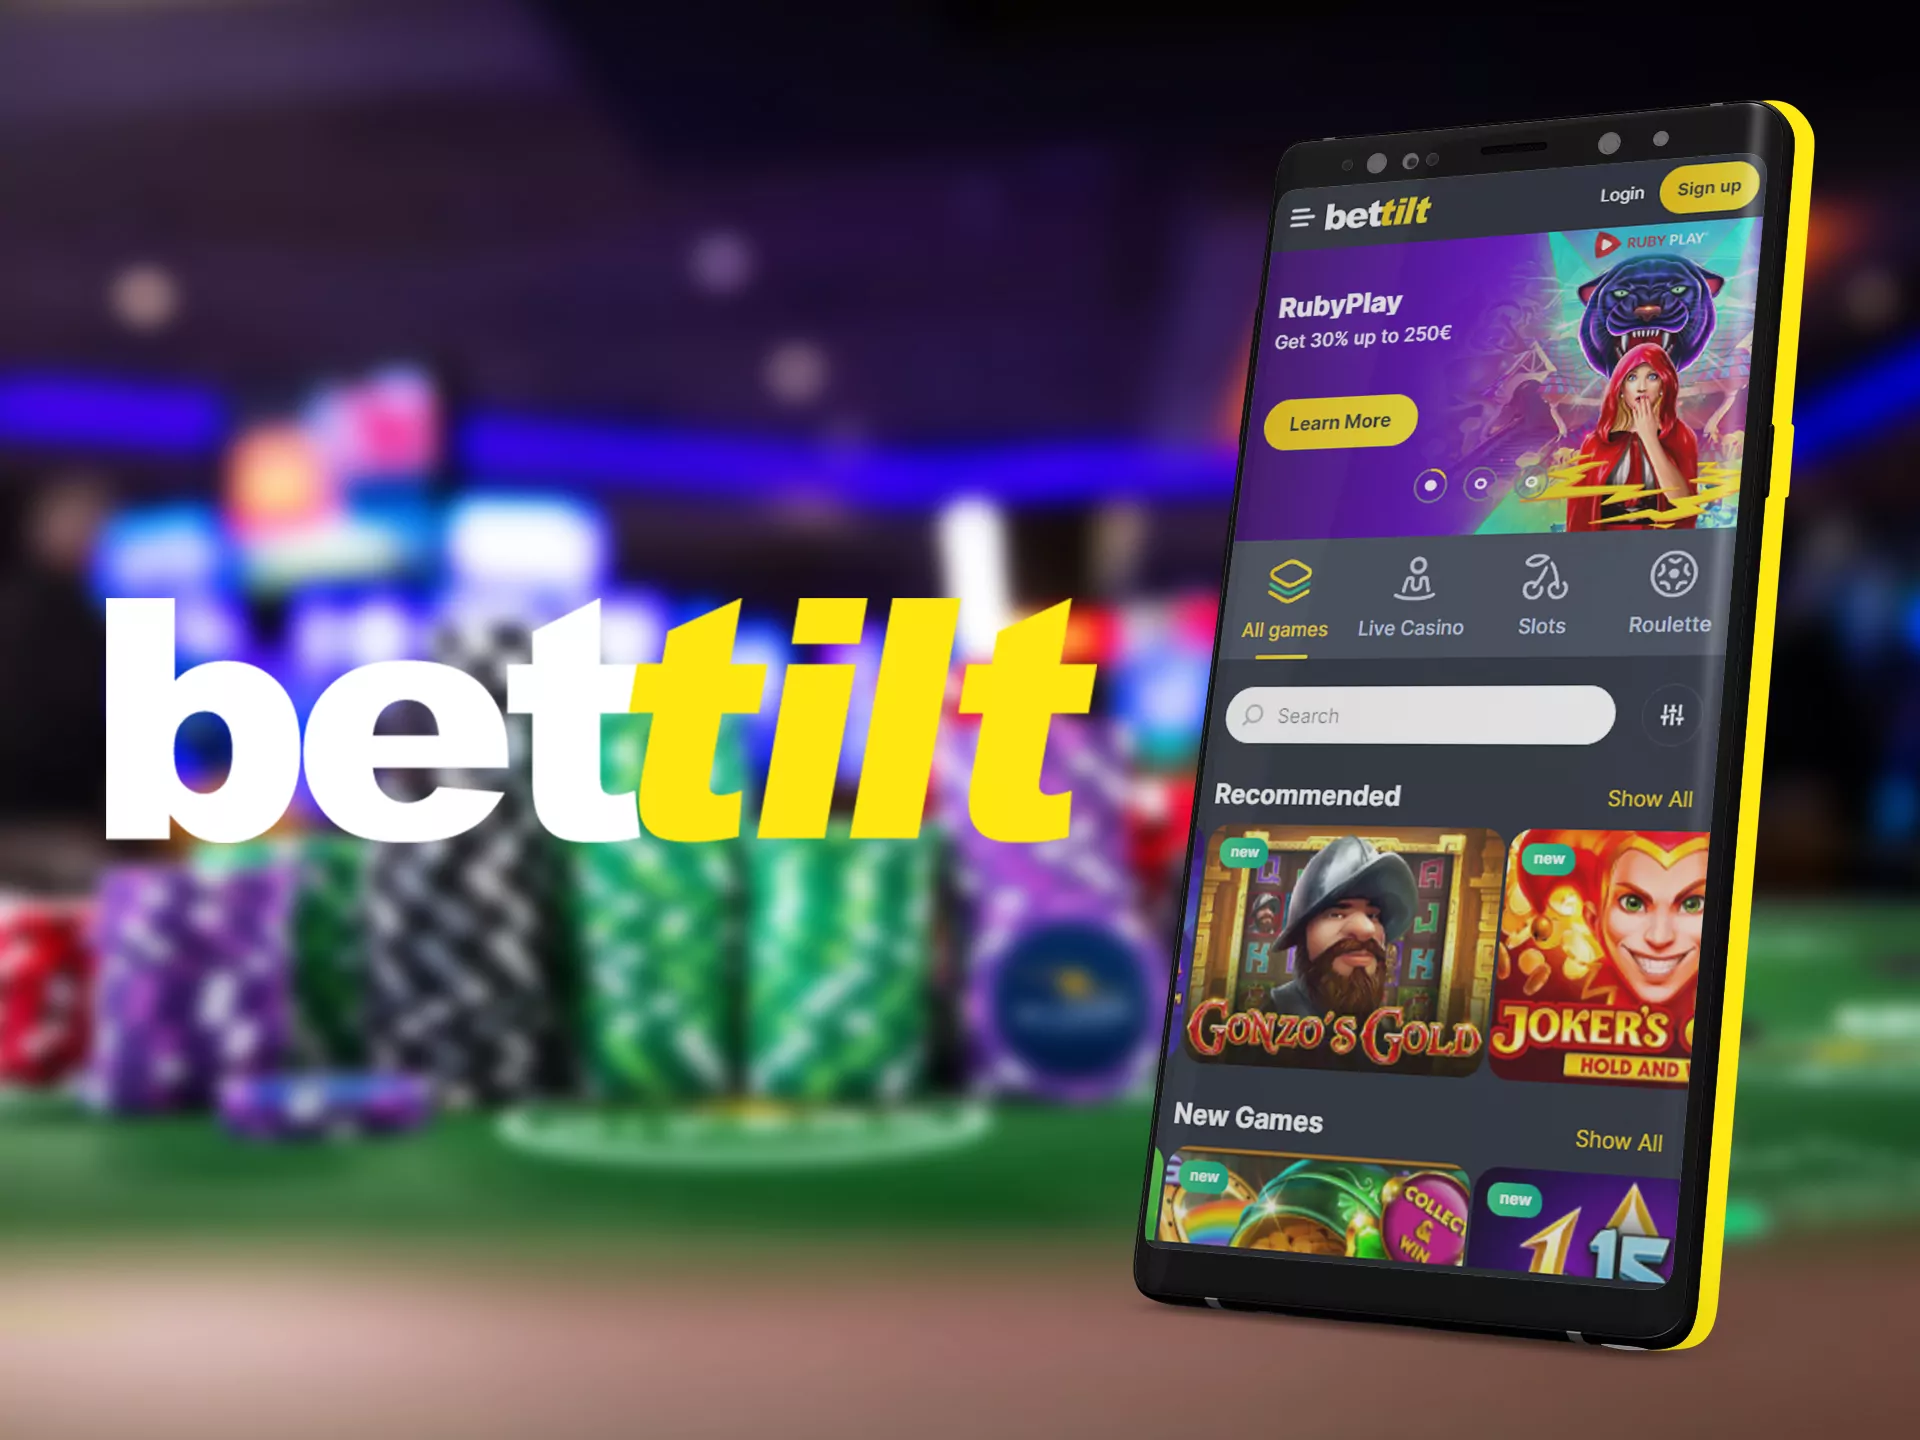 Play casino in Bettilt app.